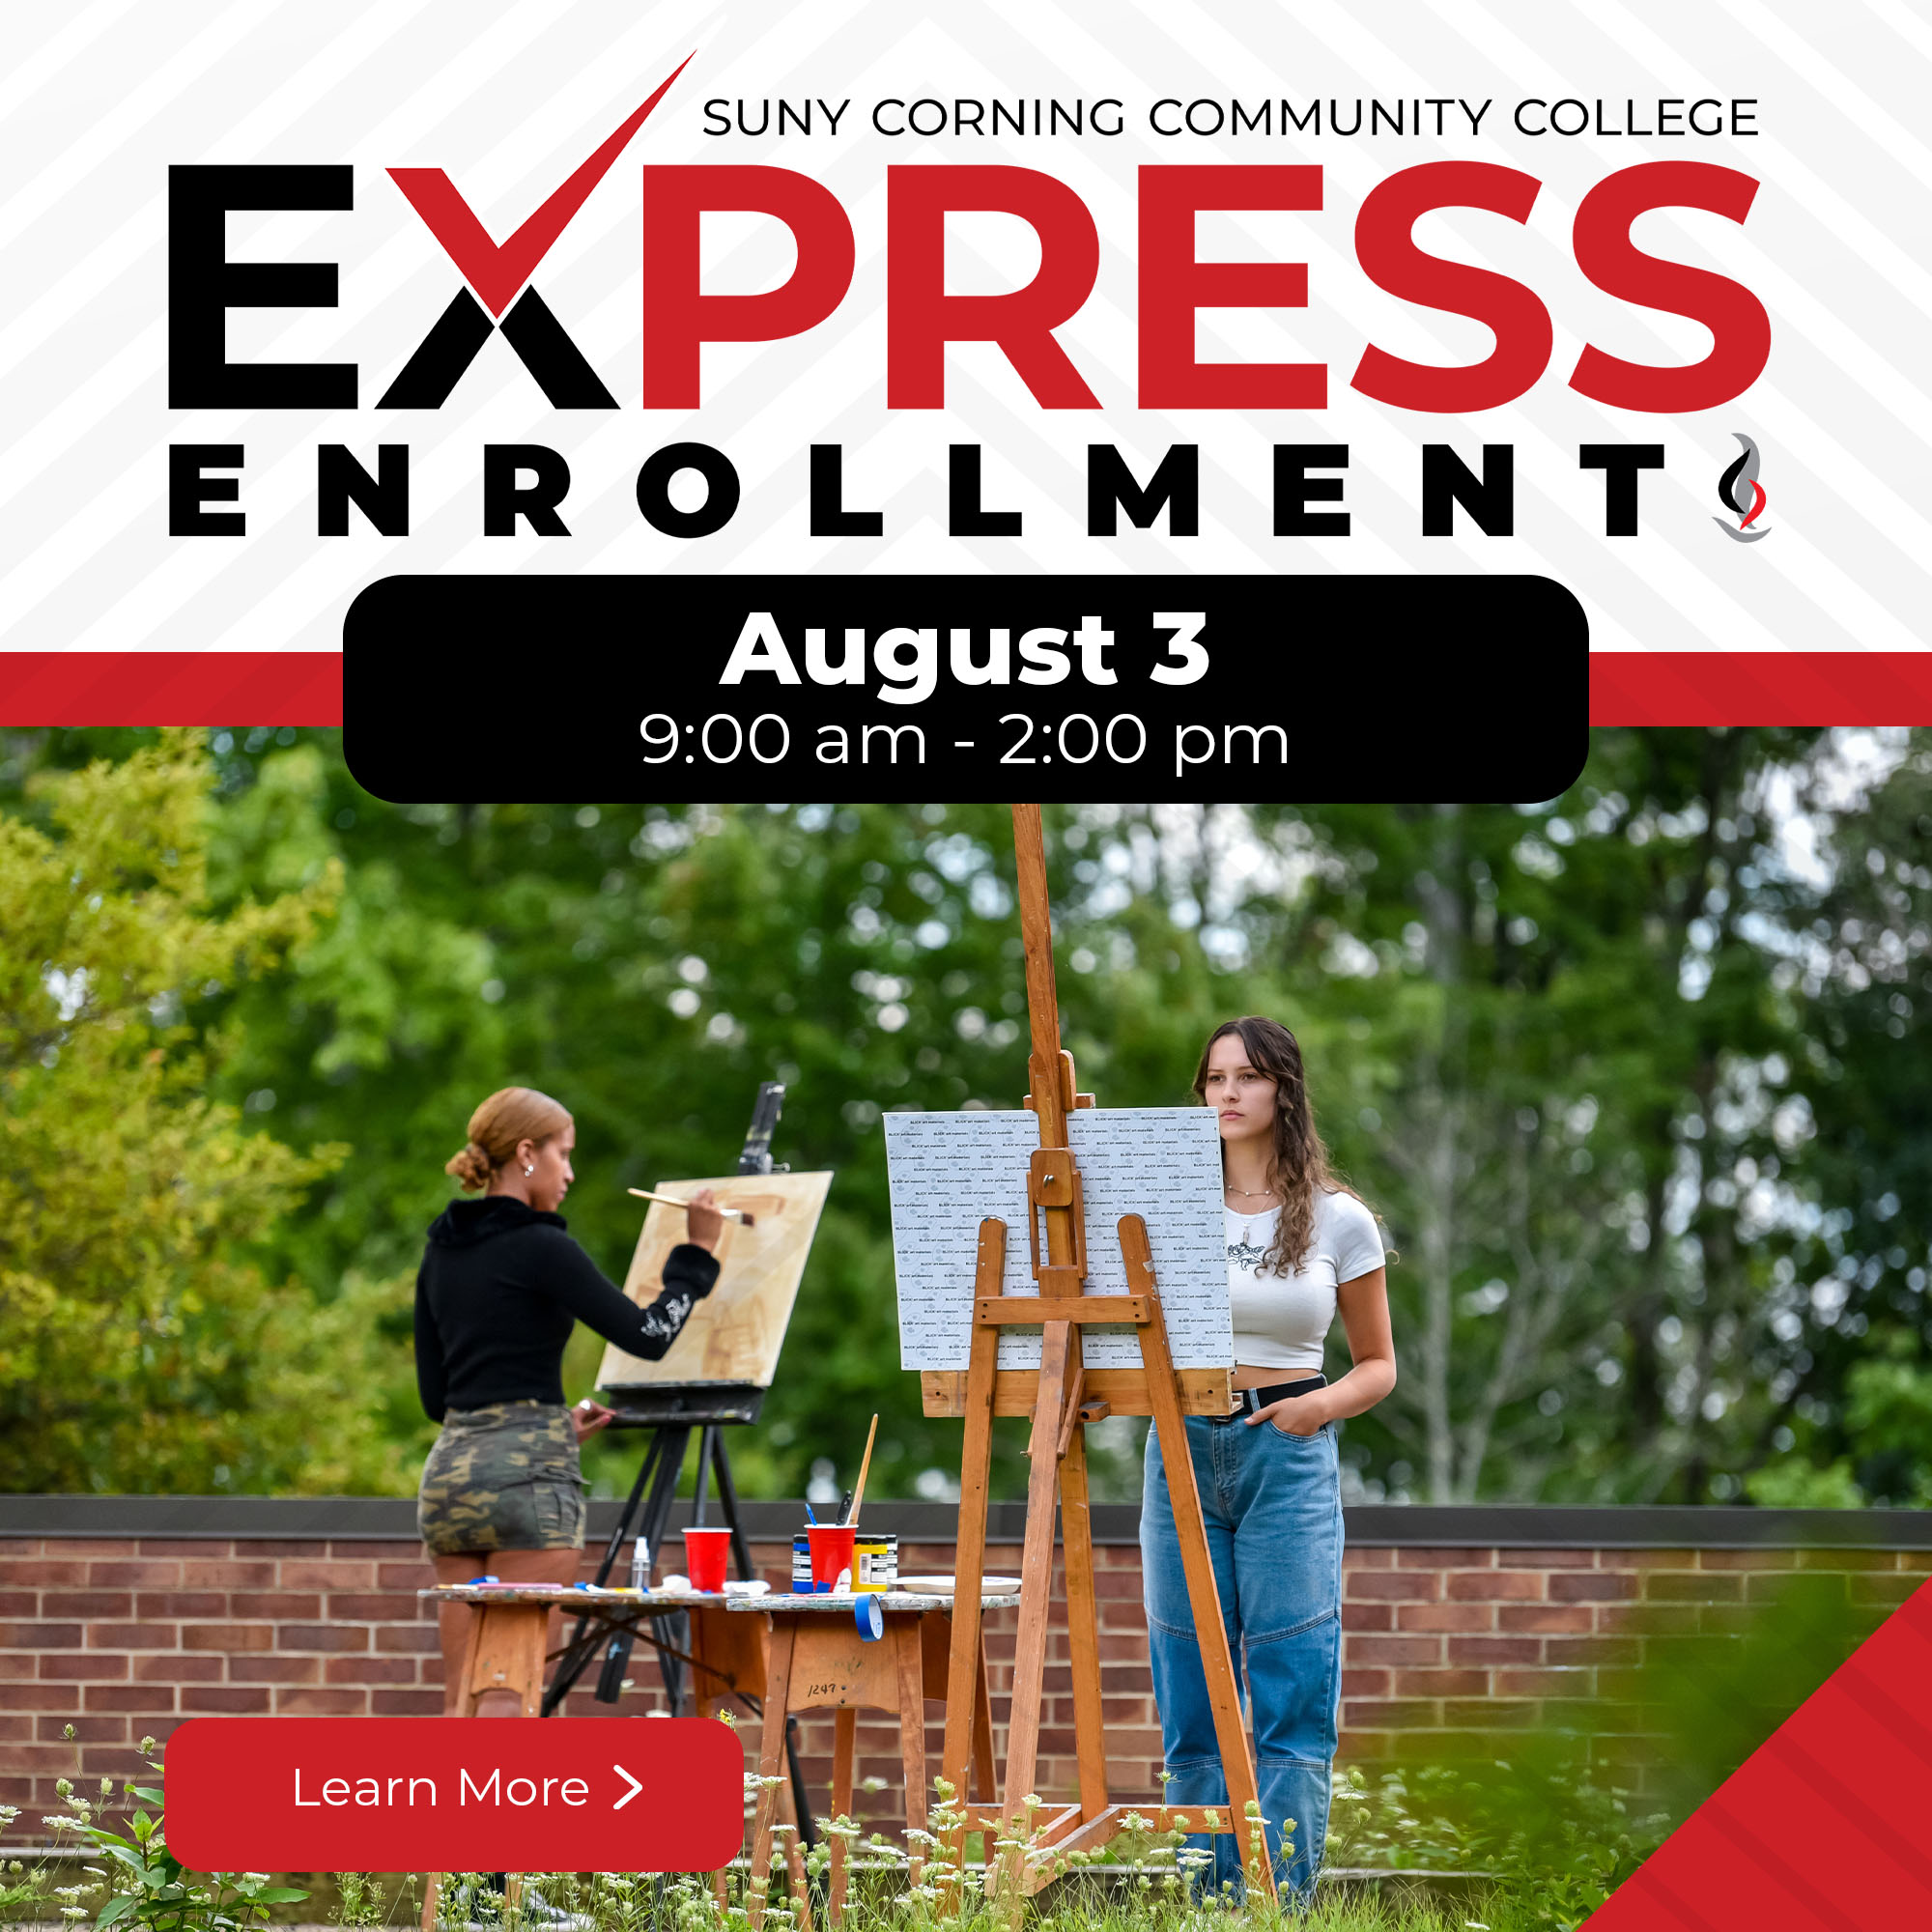 Express Enrollment